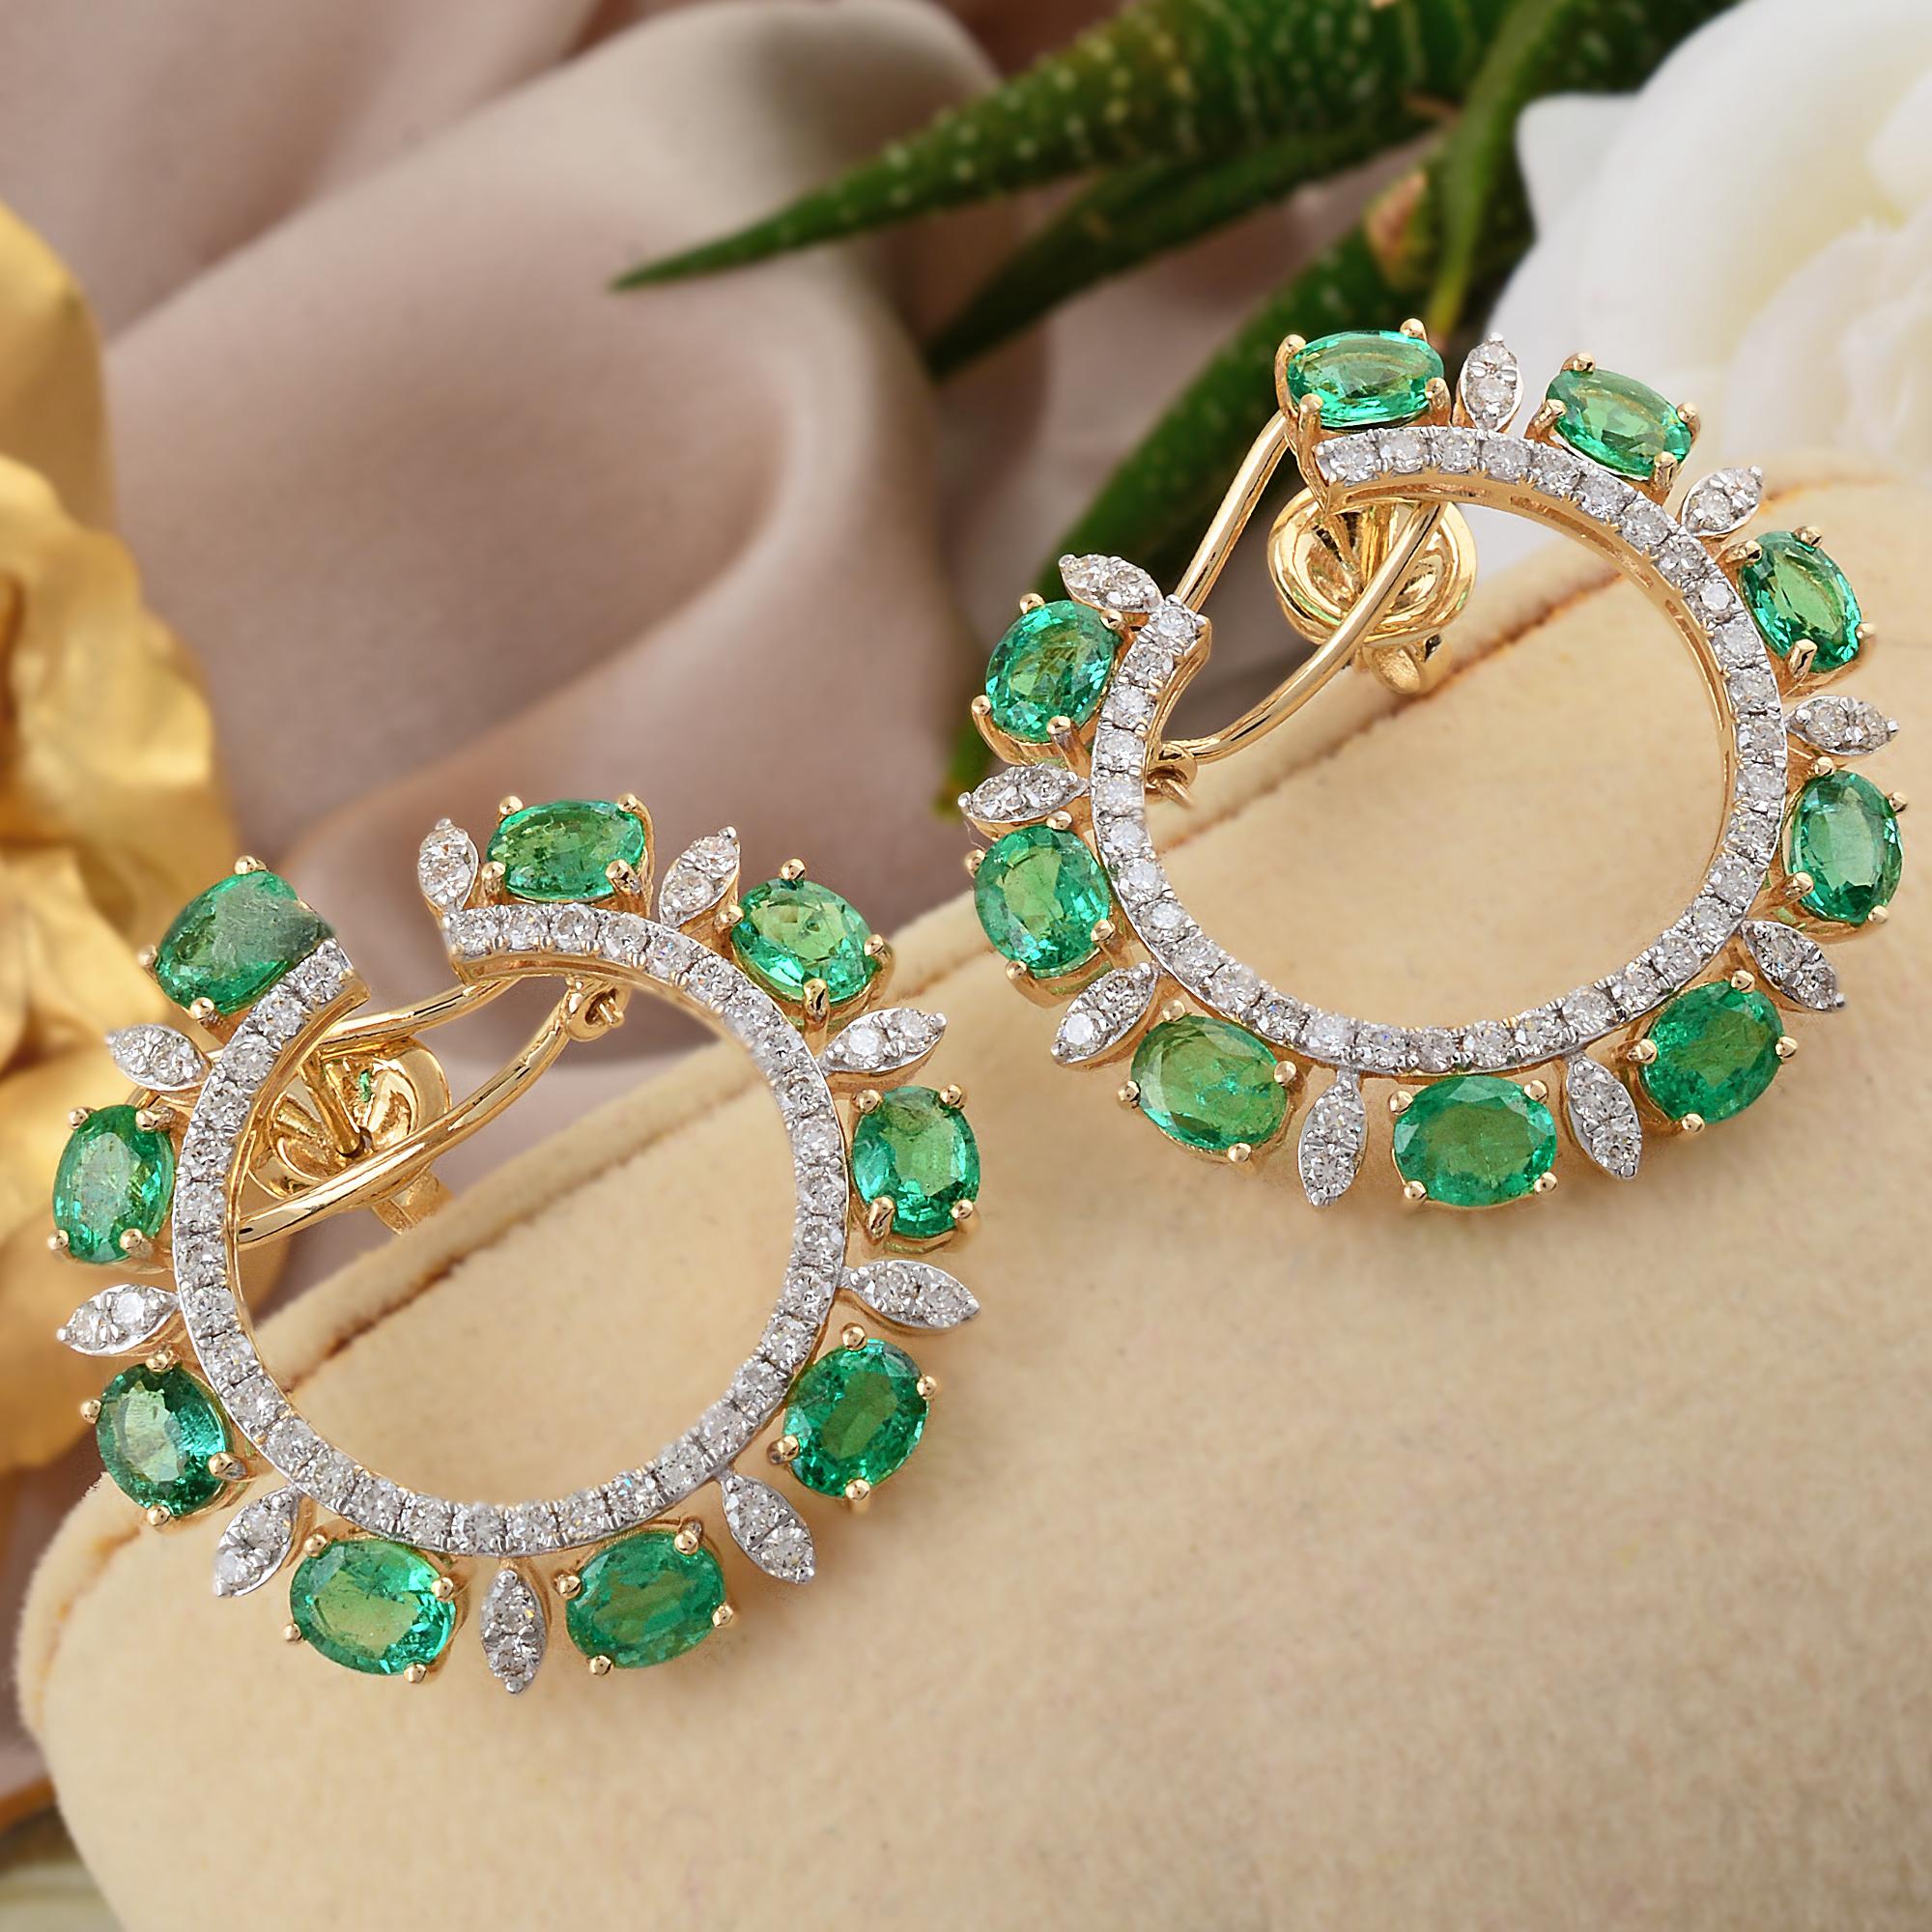 Oval Cut Oval Zambian Emerald Gemstone Lever Back Earrings Diamond 14 Karat Yellow Gold For Sale